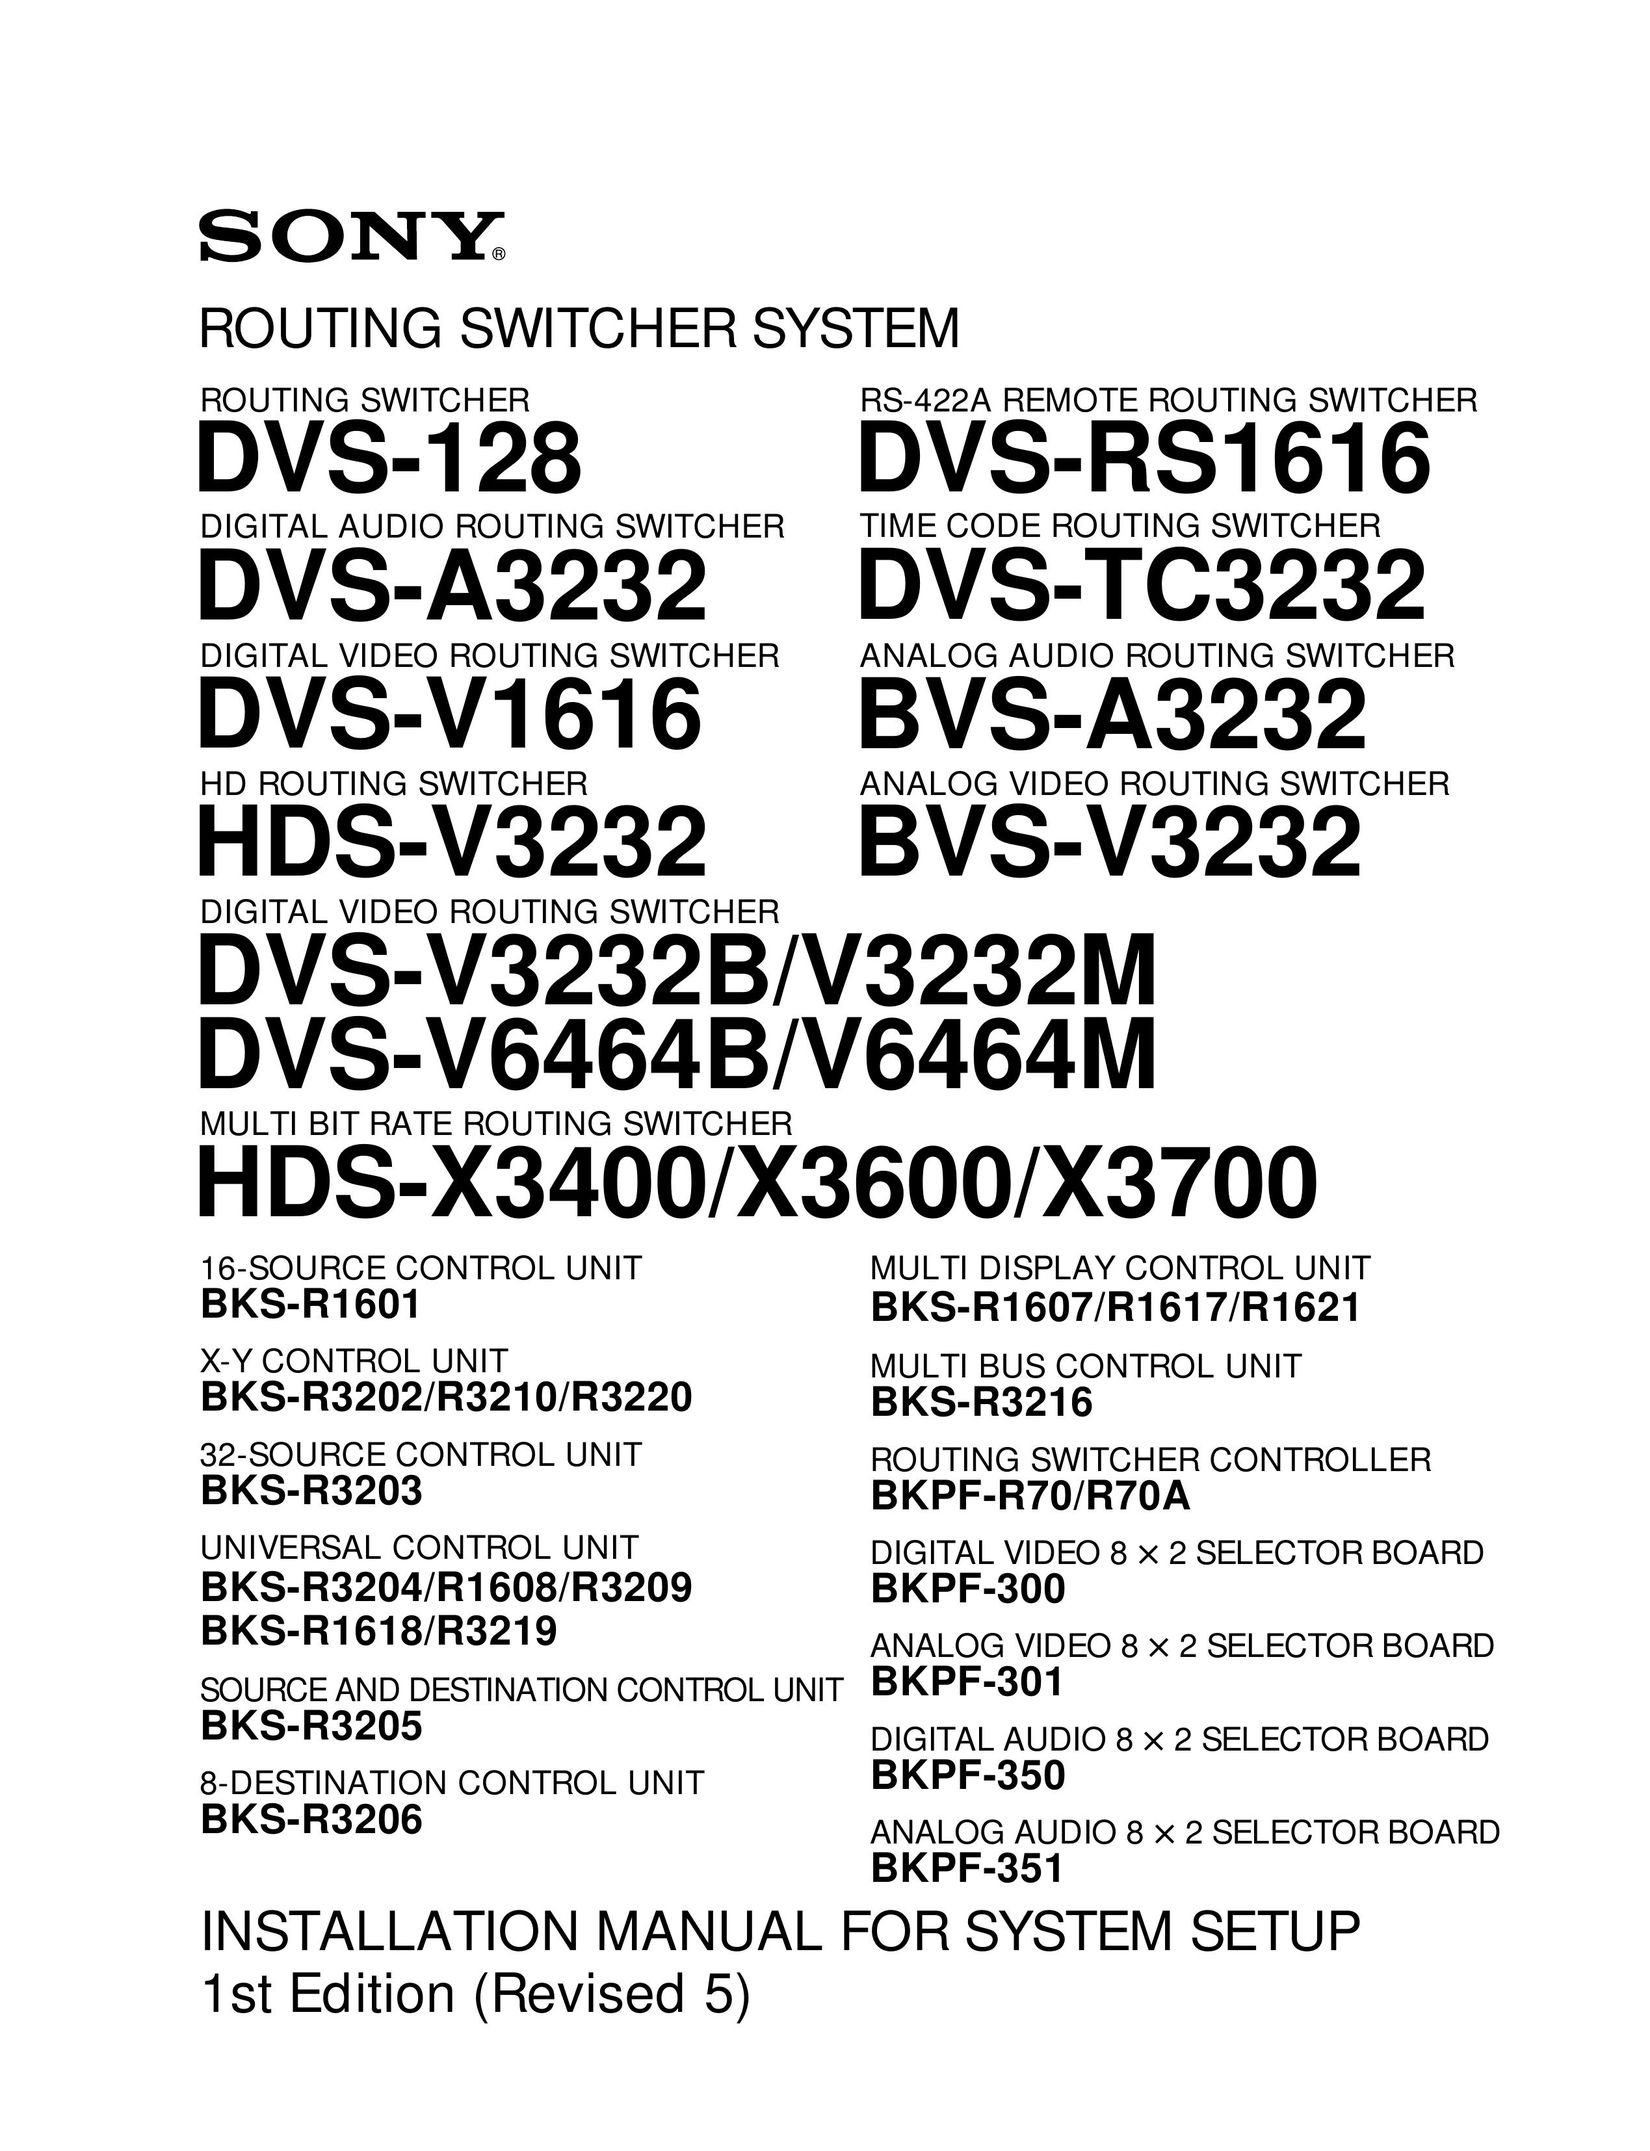 Sony DVS-V6464B/V6464M Network Router User Manual